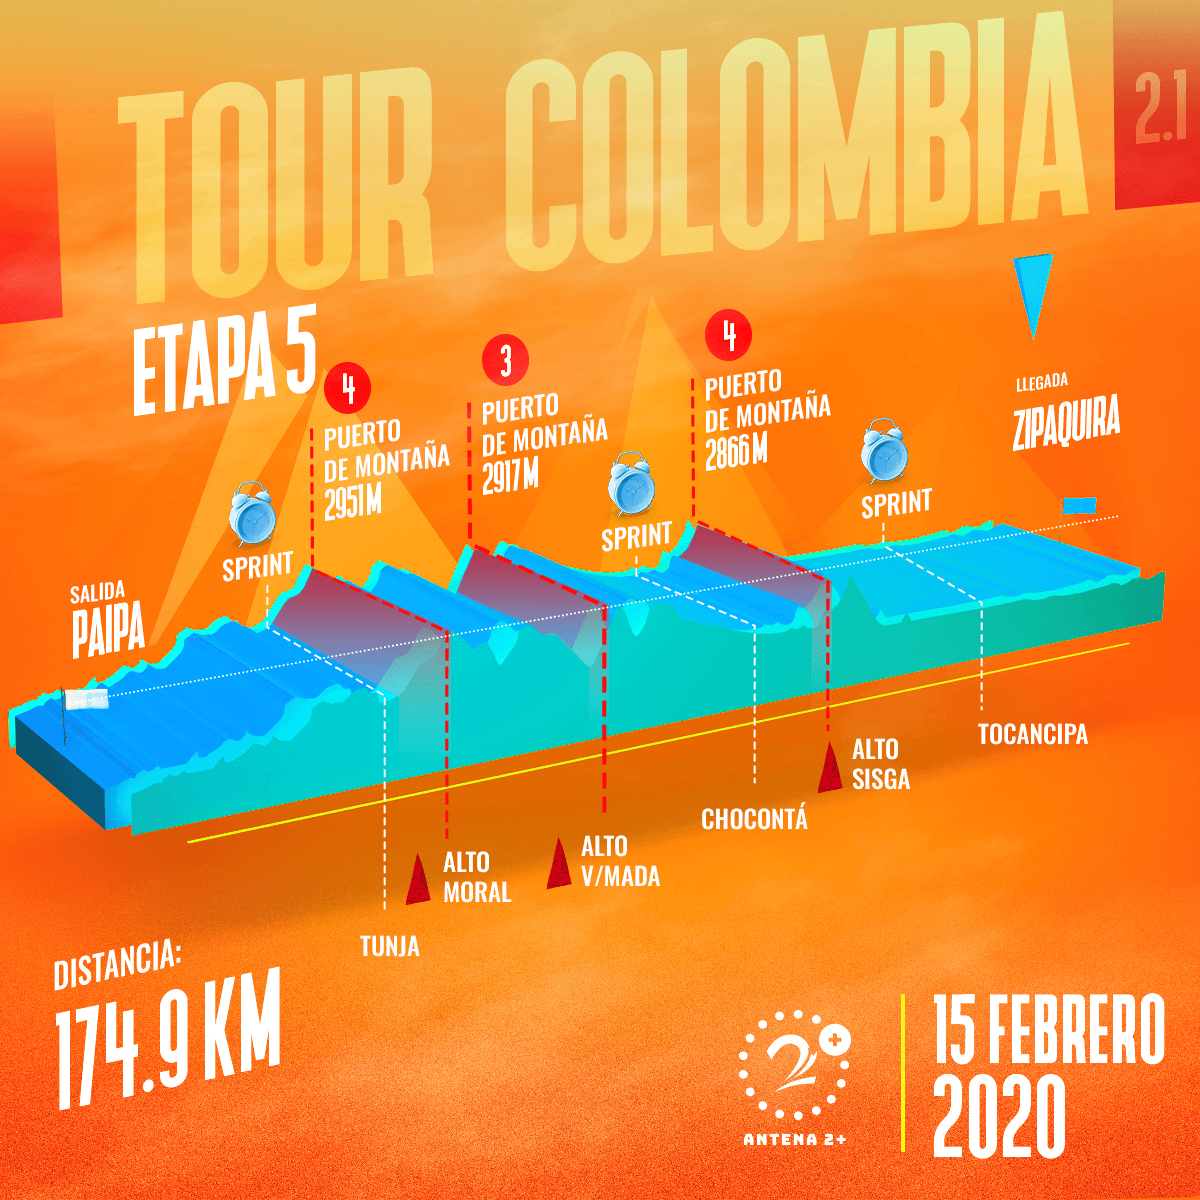 Tour Colombia 2020, etapa 5